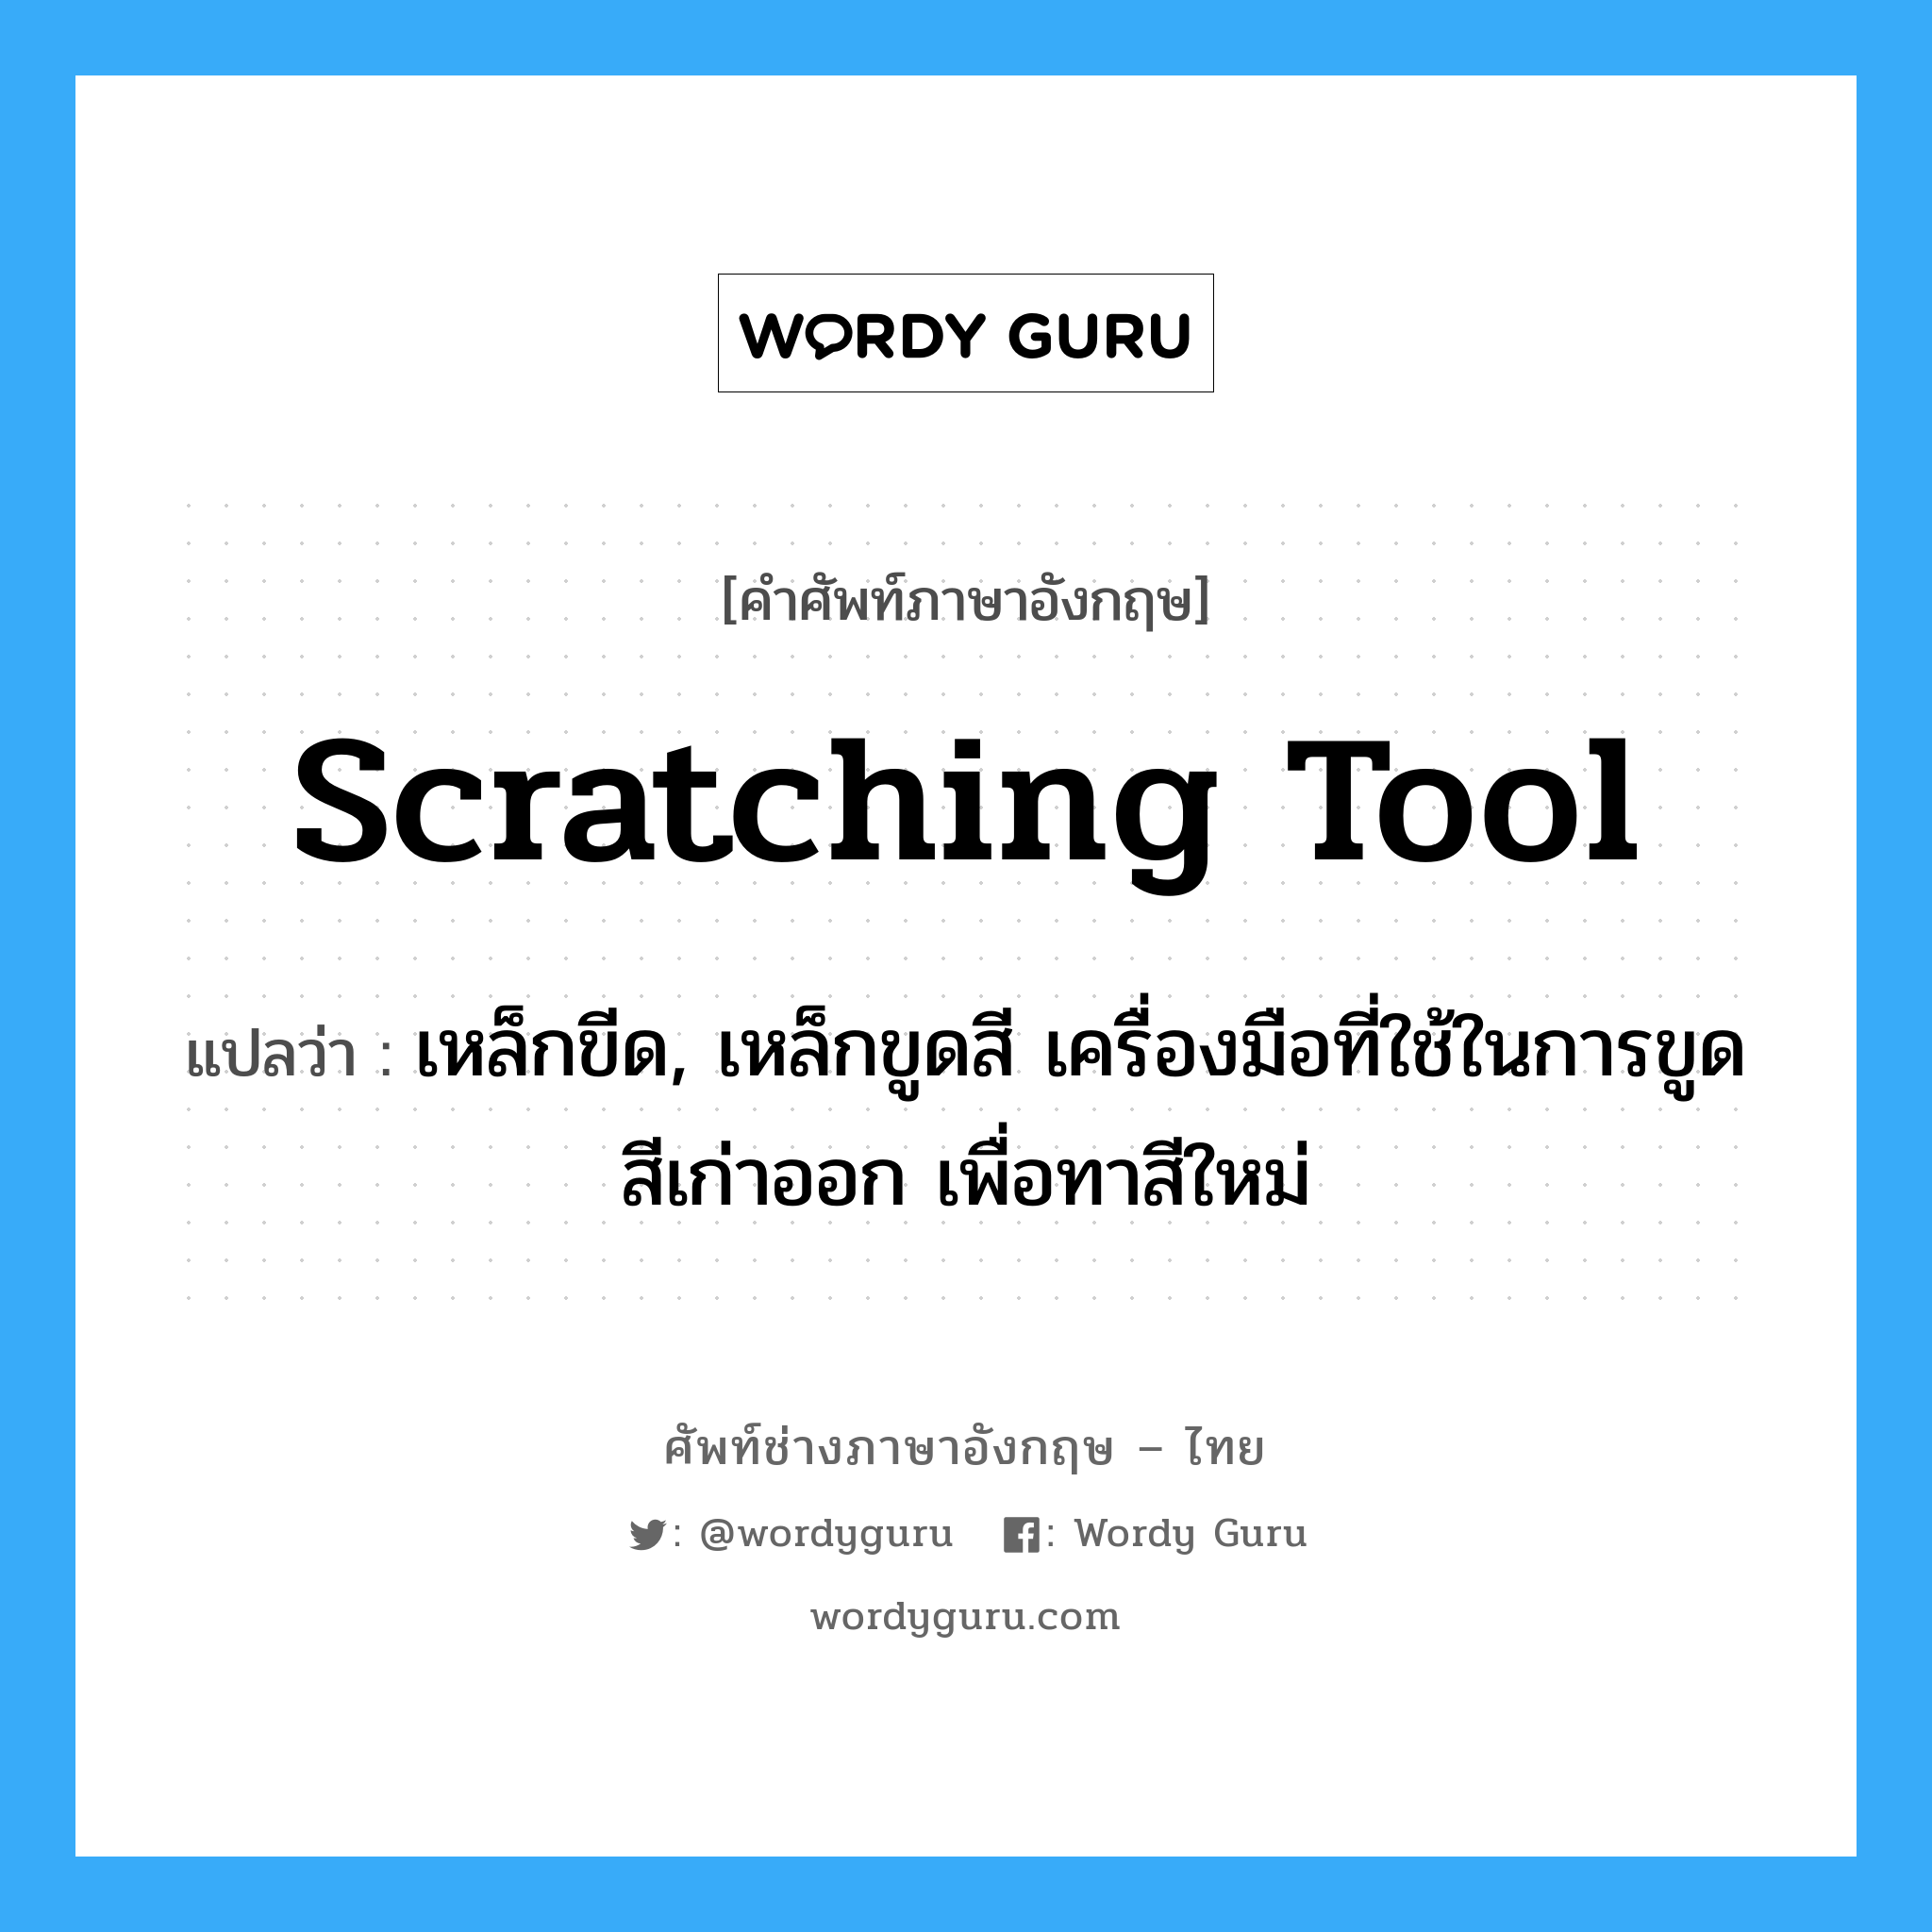 scratching tool แปลว่า?, คำศัพท์ช่างภาษาอังกฤษ - ไทย scratching tool คำศัพท์ภาษาอังกฤษ scratching tool แปลว่า เหล็กขีด, เหล็กขูดสี เครื่องมือที่ใช้ในการขูดสีเก่าออก เพื่อทาสีใหม่